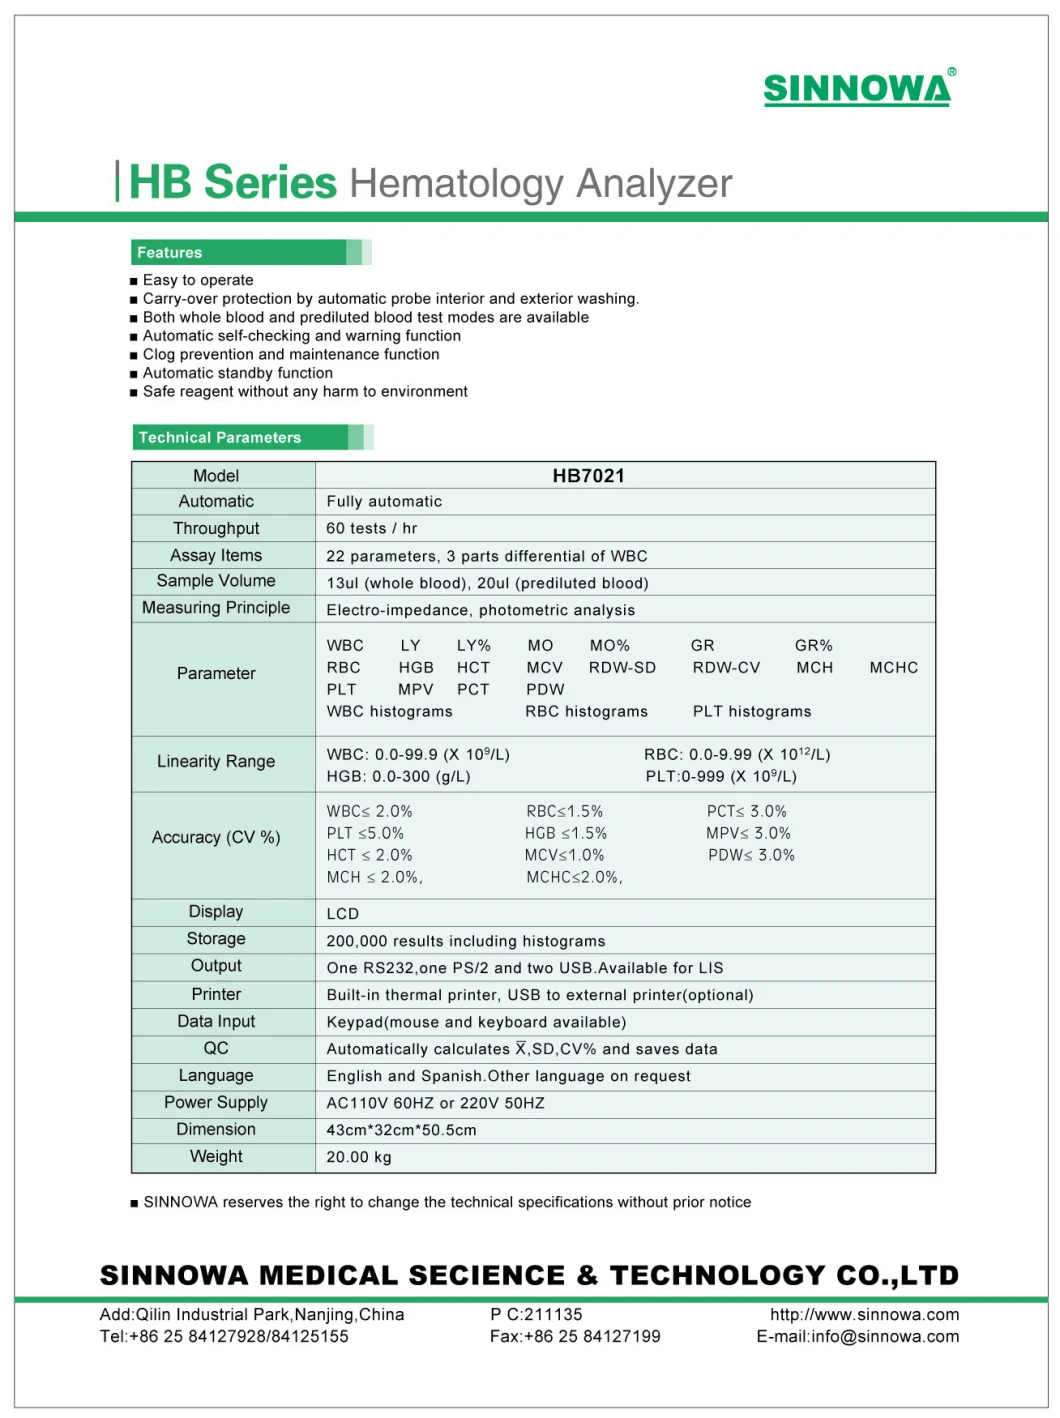 3 Part Automated Hematology Analyzer Hb-7021